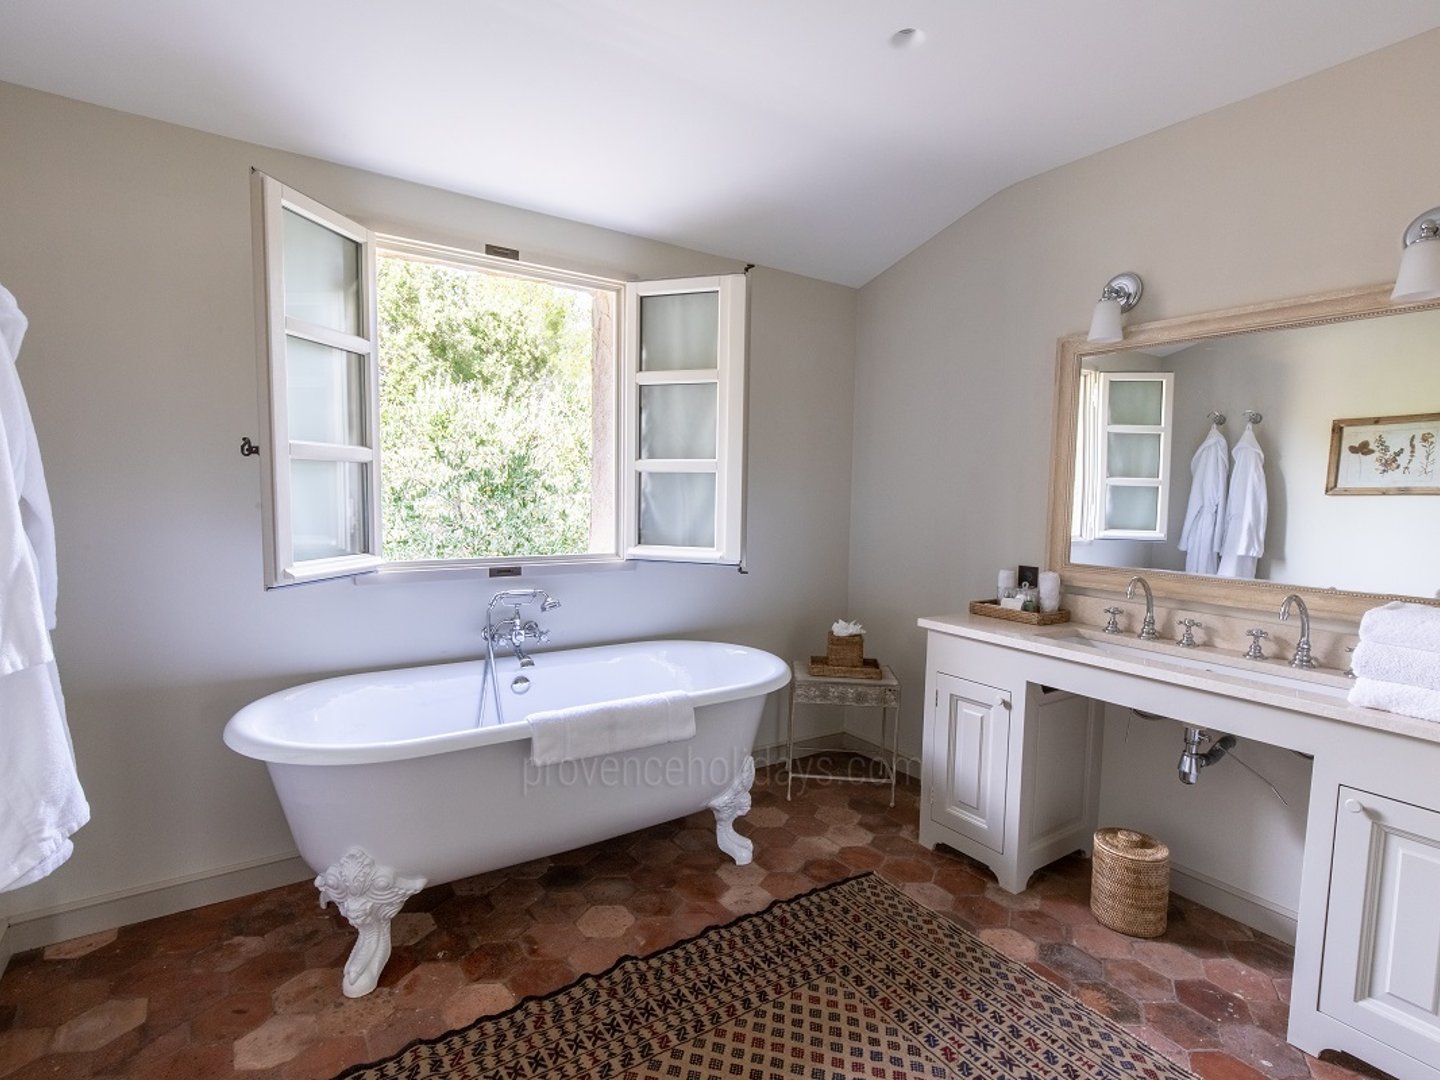 28 - Villa en Provence: Villa: Bathroom